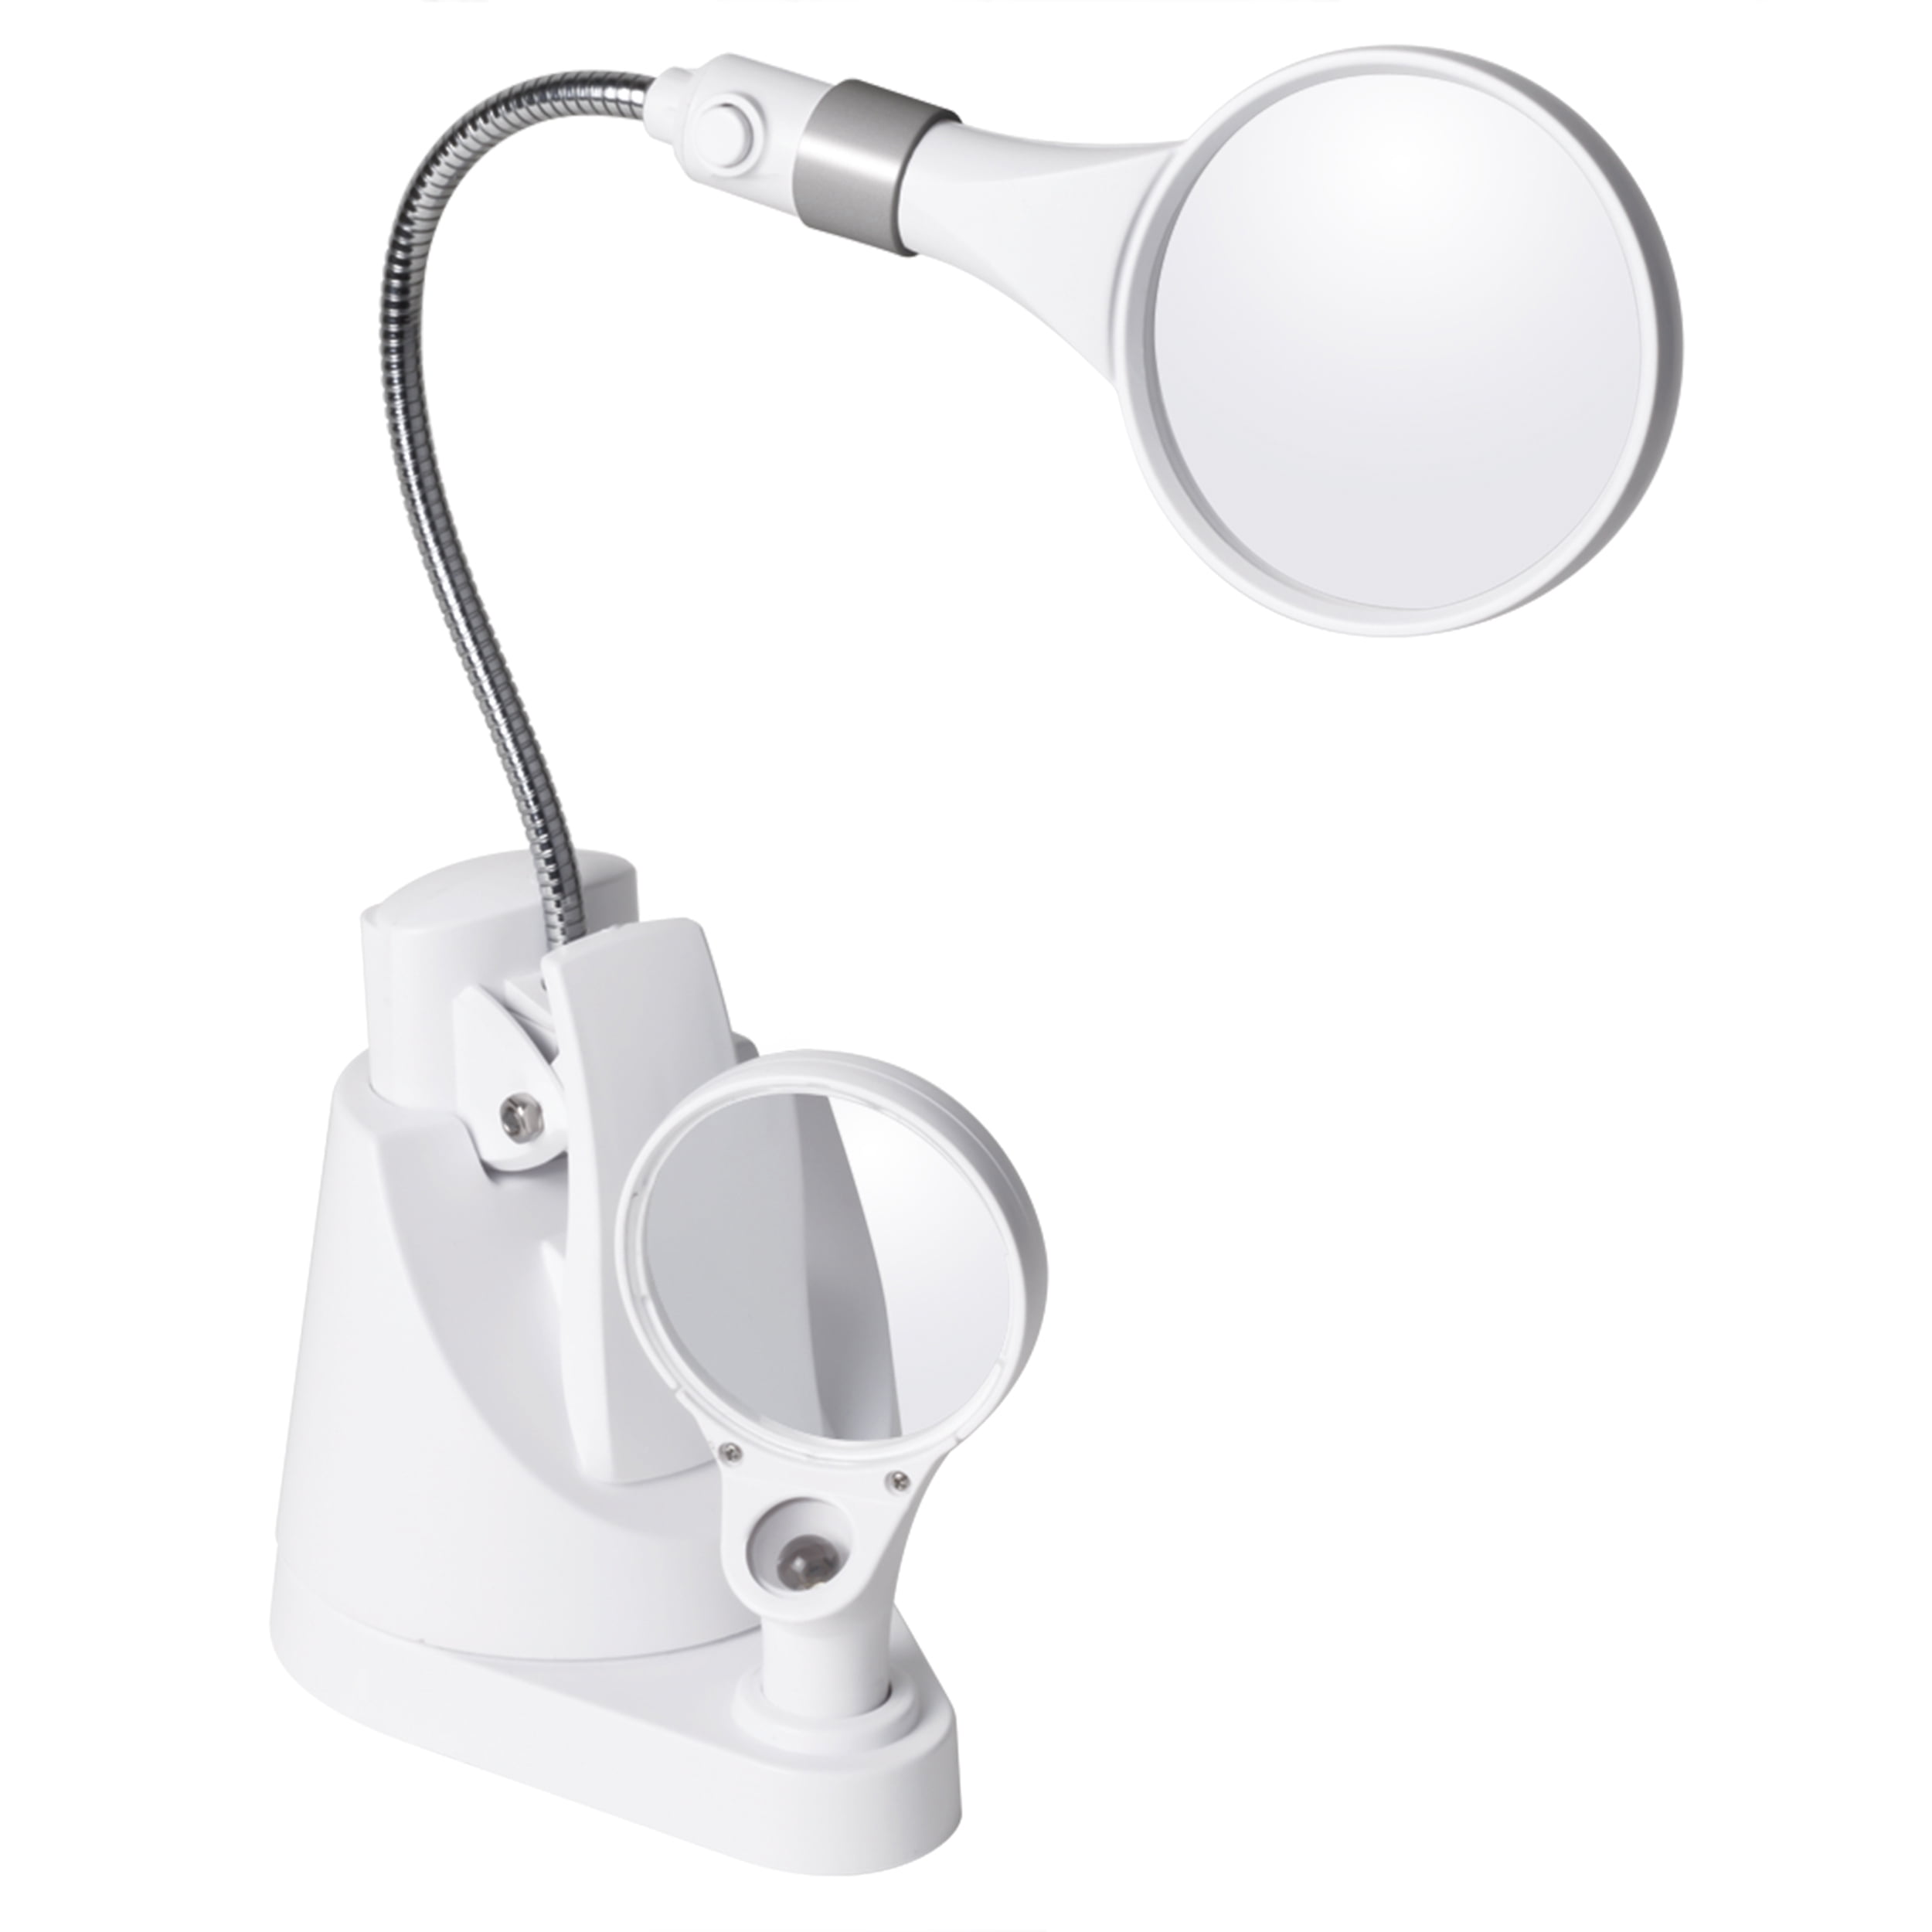 OttLite LED Clip/Freestanding Magnifier 